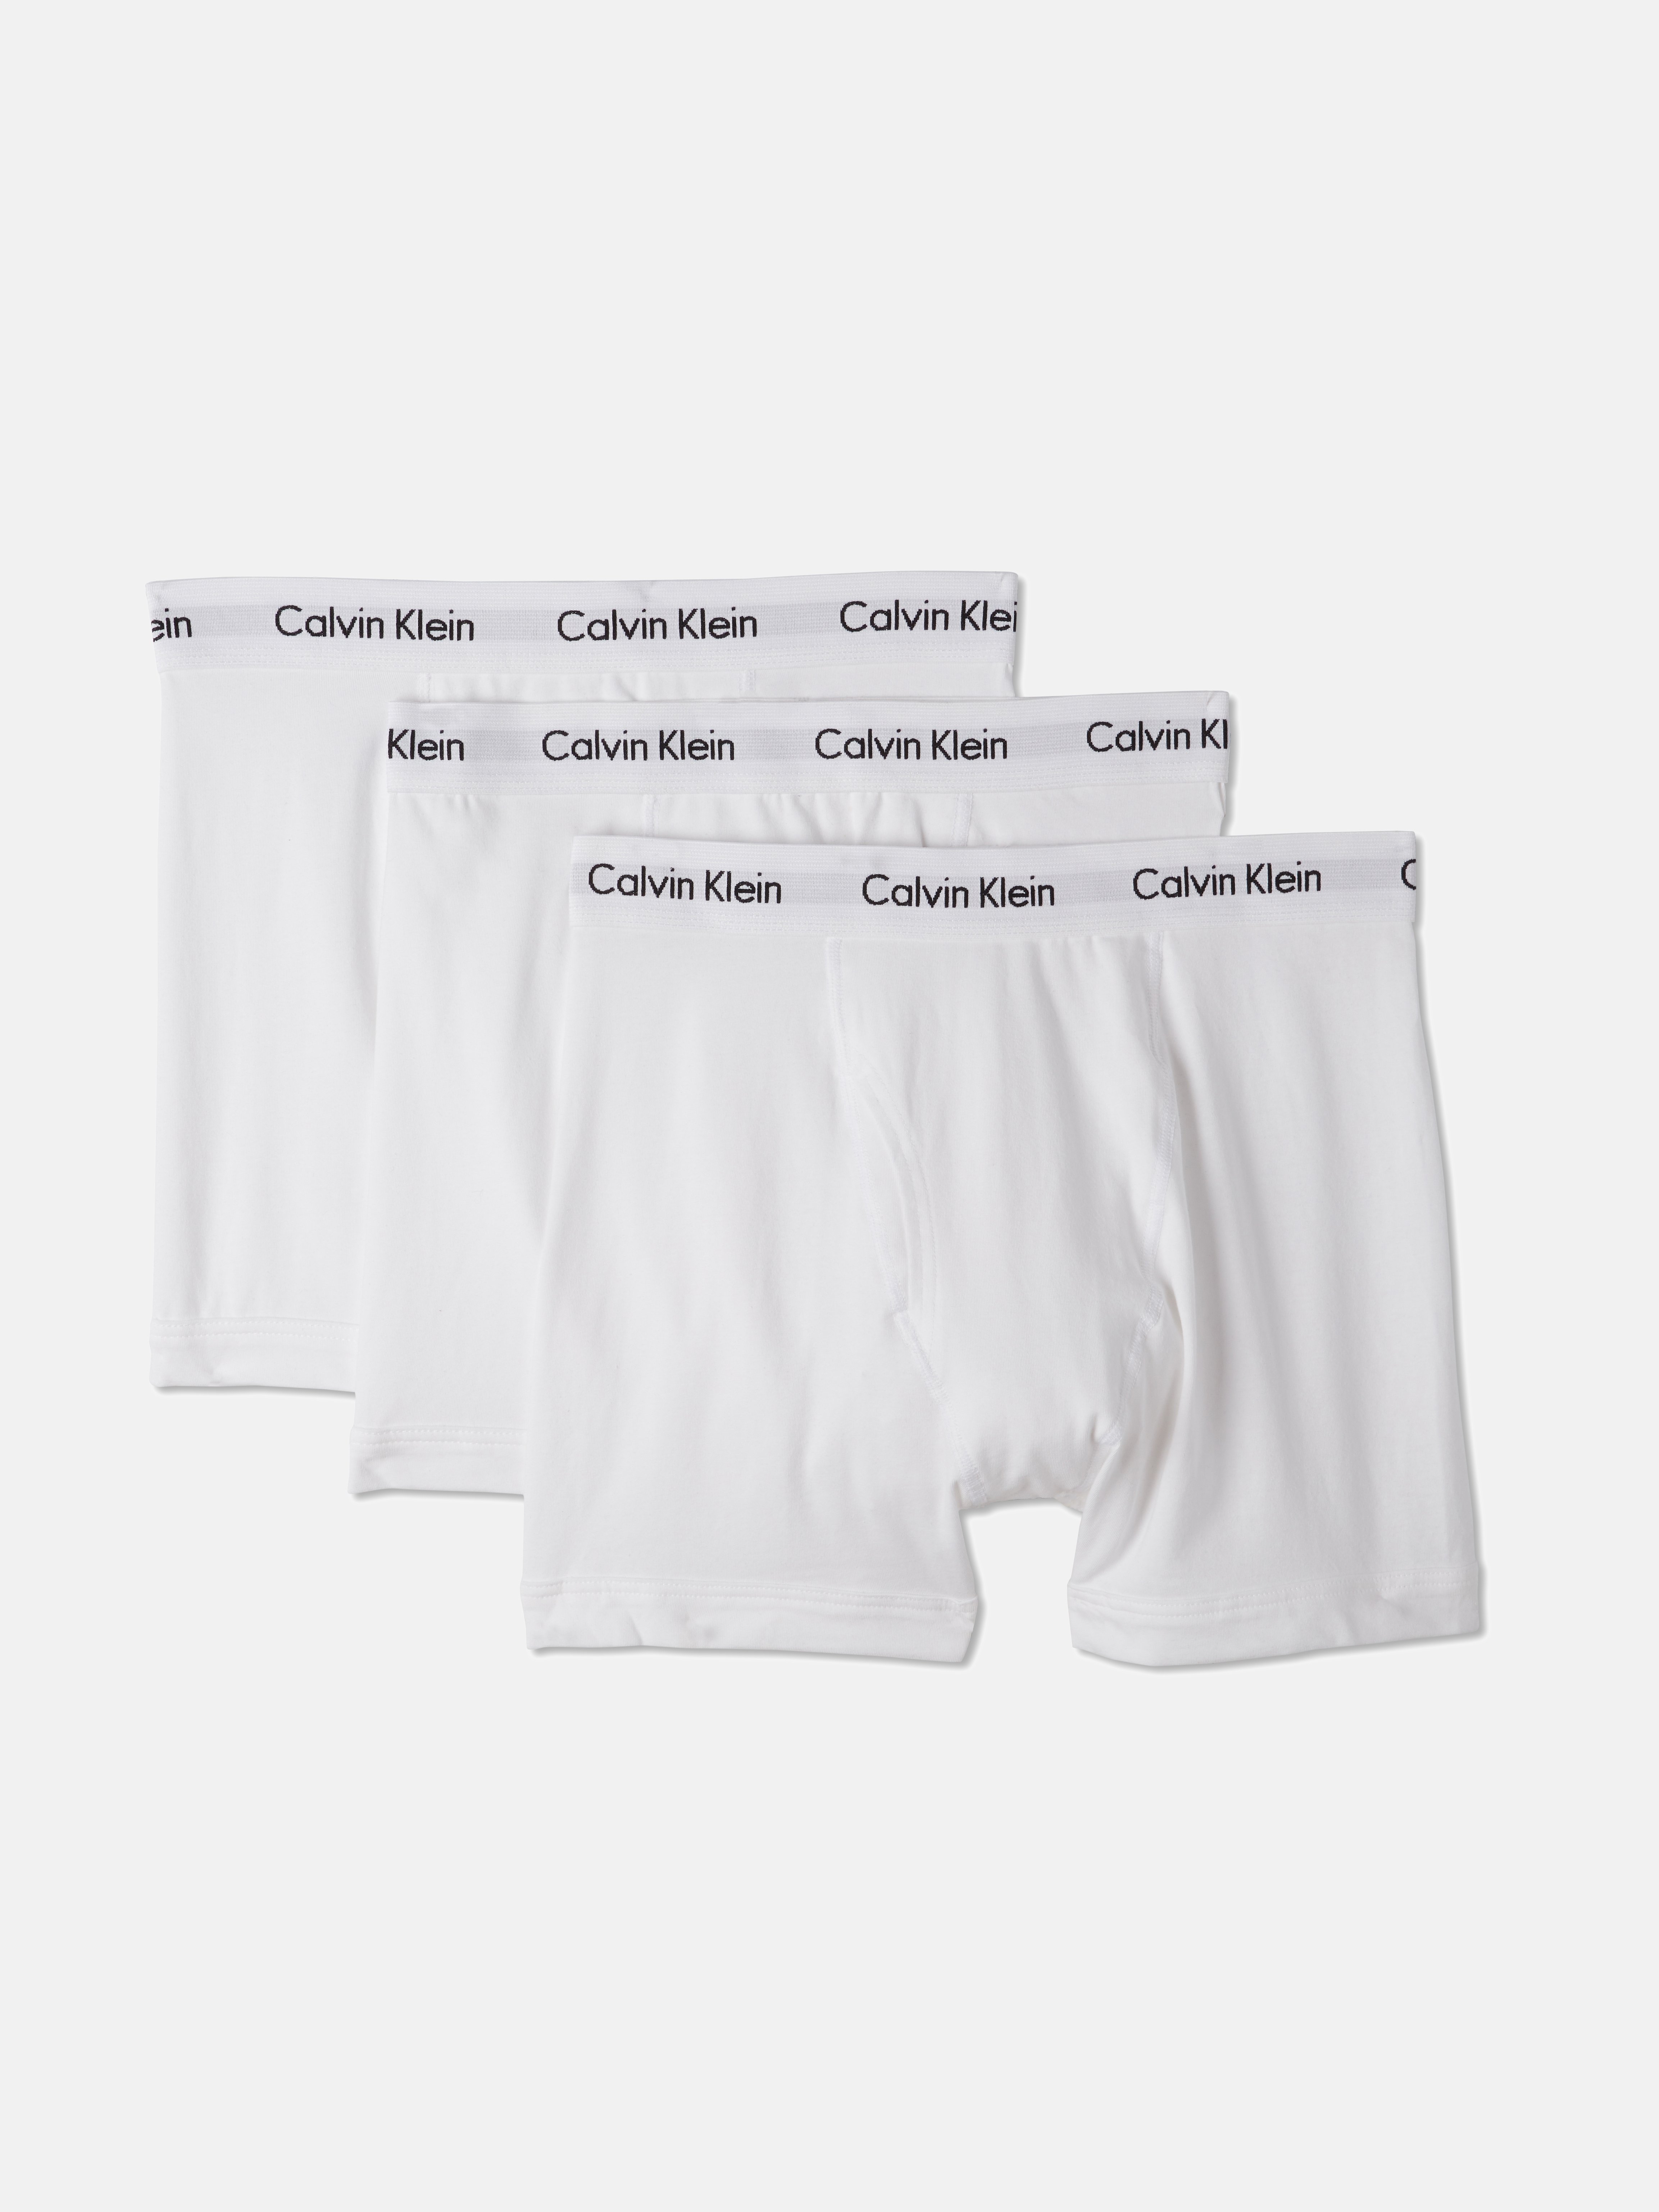 cheapest place to get calvin klein underwear